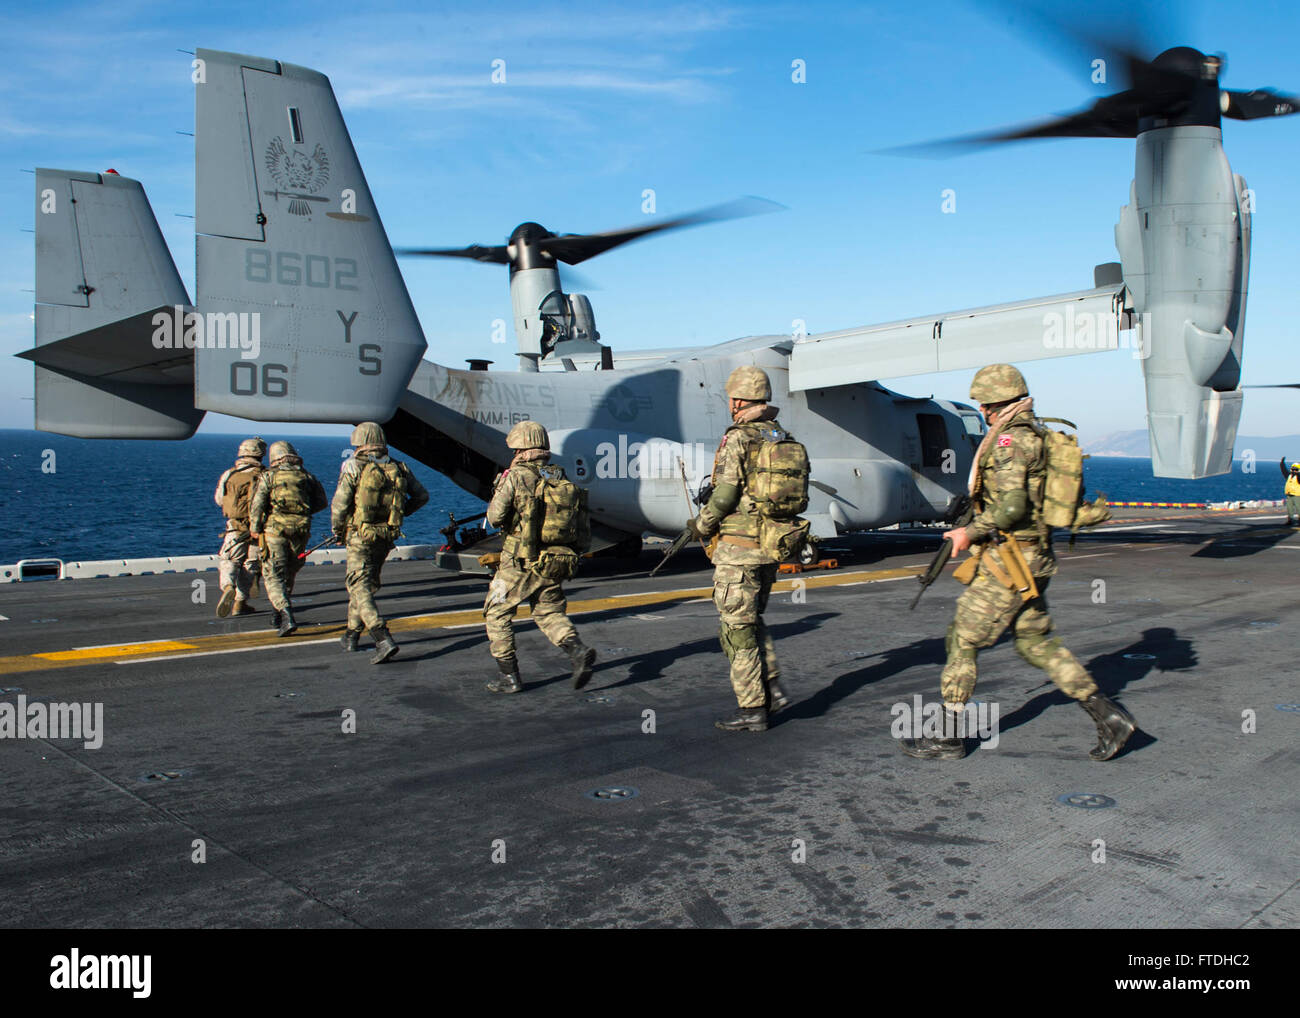 151027-N-AX638-061 Ägäis (27. Oktober 2015) türkische Marines an Bord ein MV-22 Osprey auf dem Flugdeck der amphibischen Angriff Schiff USS Kearsarge (LHD-3) während der Teilnahme an der Übung Egemen 2015, Okt. 27. Egemen ist eine türkische geführt und gehostete amphibische Übung zur Steigerung taktischen Fertigkeiten und Interoperabilität zwischen den Teilnehmern.  Kearsarge, eingesetzt als Teil der Kearsarge amphibische Gruppe bereit, führt Marinebetriebe in den USA 6. Flotte Bereich der Maßnahmen zur Erhöhung der Sicherheit der Vereinigten Staaten in Europa interessiert. (US Navy Foto von Massenkommunikation Spezialist Stockfoto